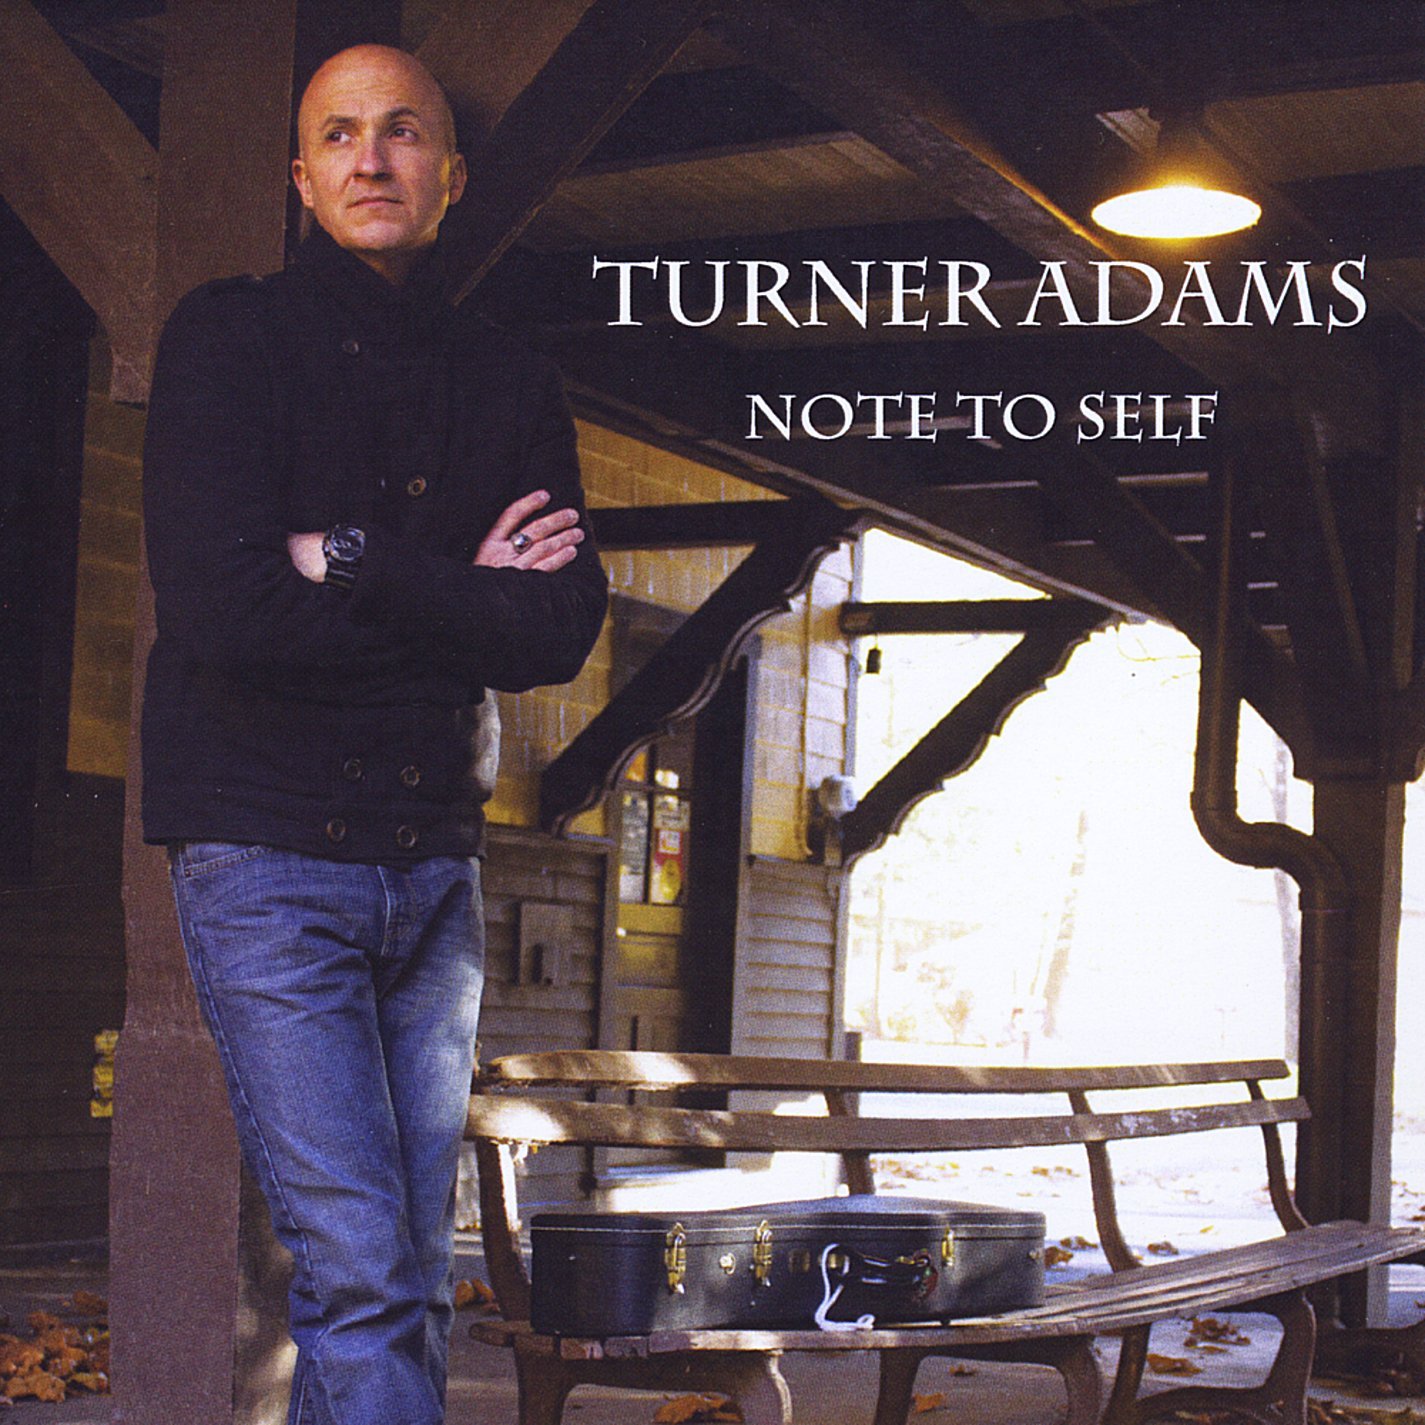 Turner Adams “Note to Self”